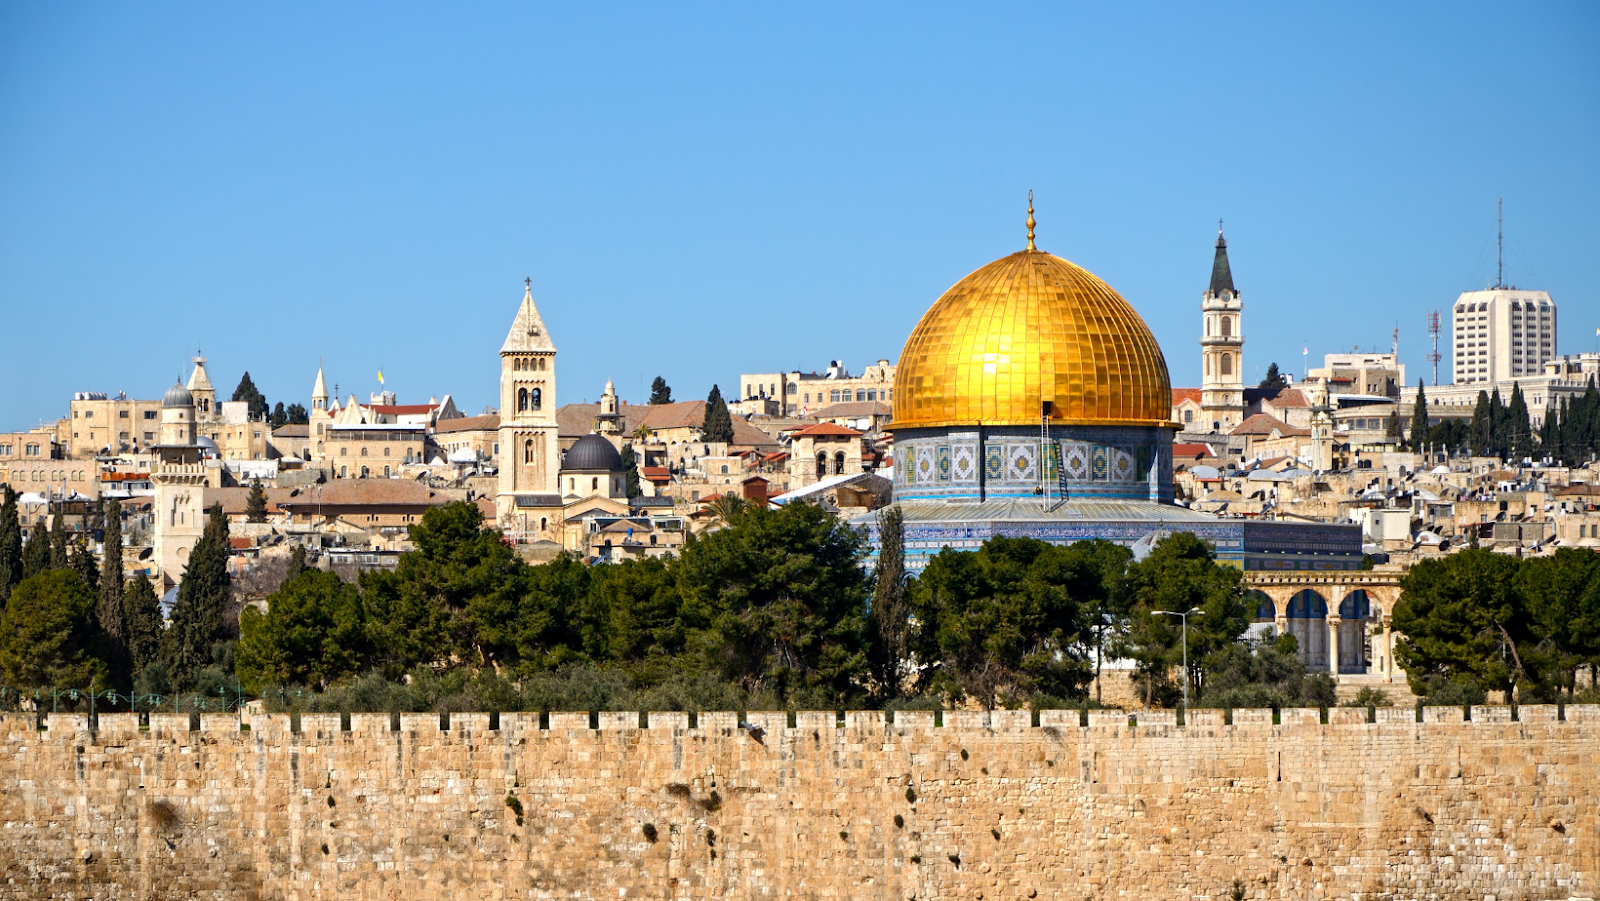 Una veduta del centro storico di Gerusalemme, con la Cupola della Roccia in primo piano